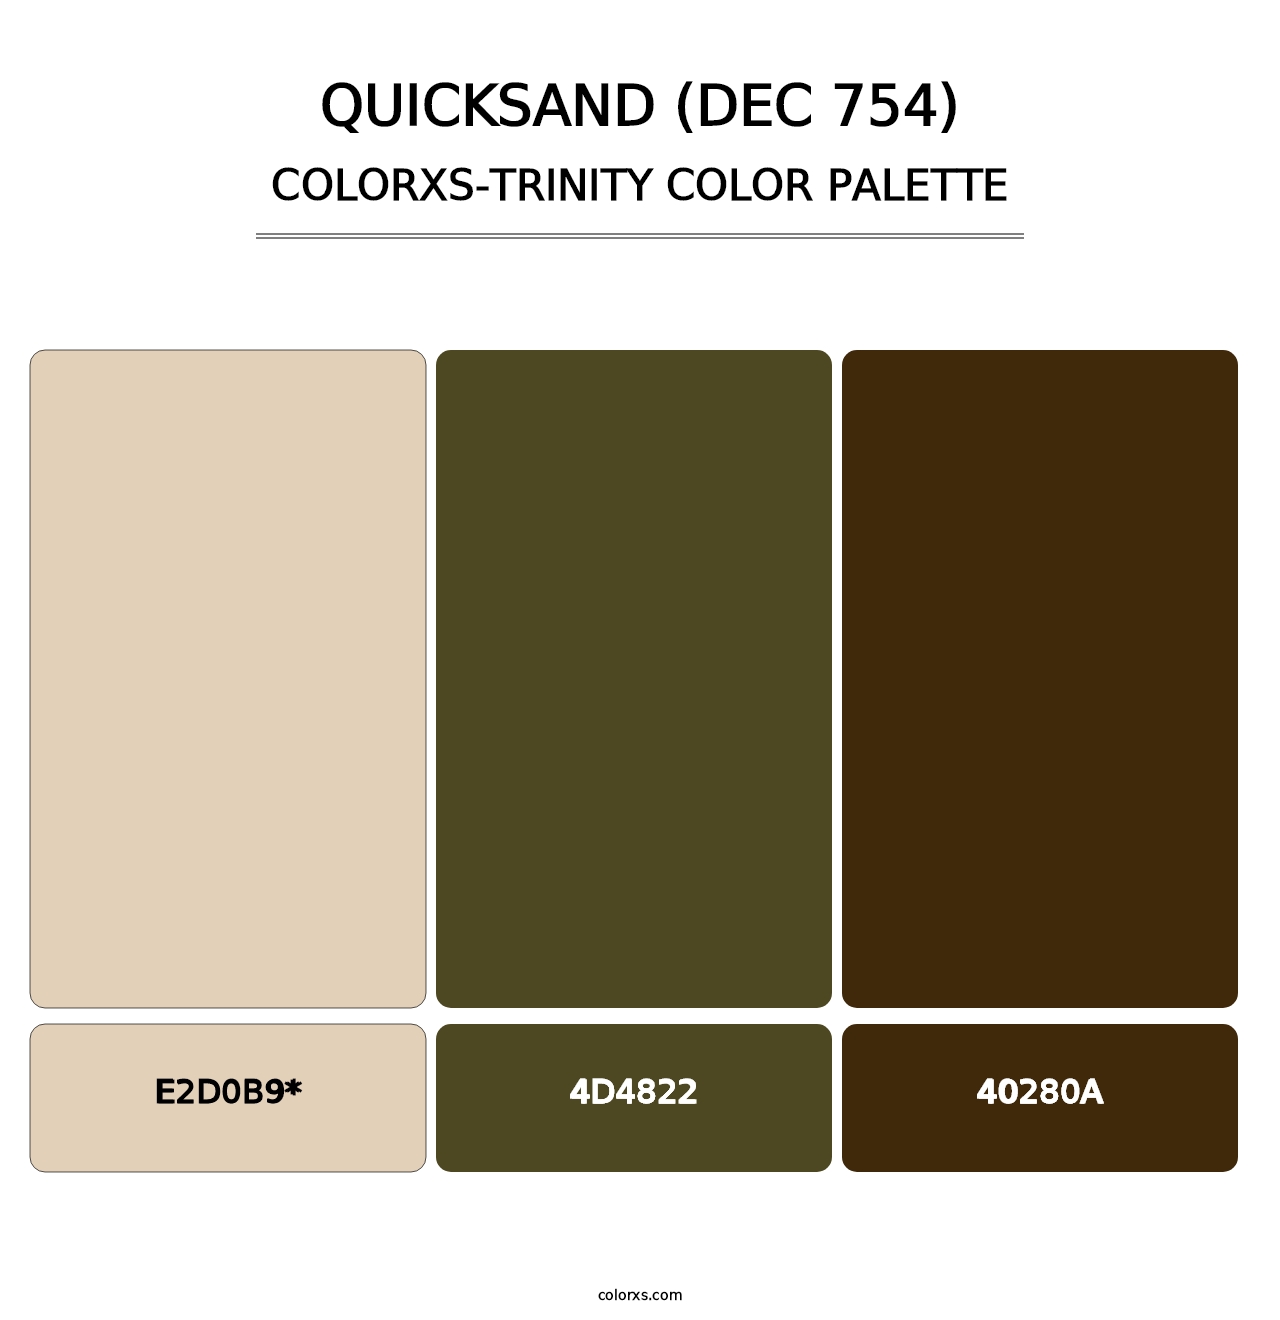 Quicksand (DEC 754) - Colorxs Trinity Palette